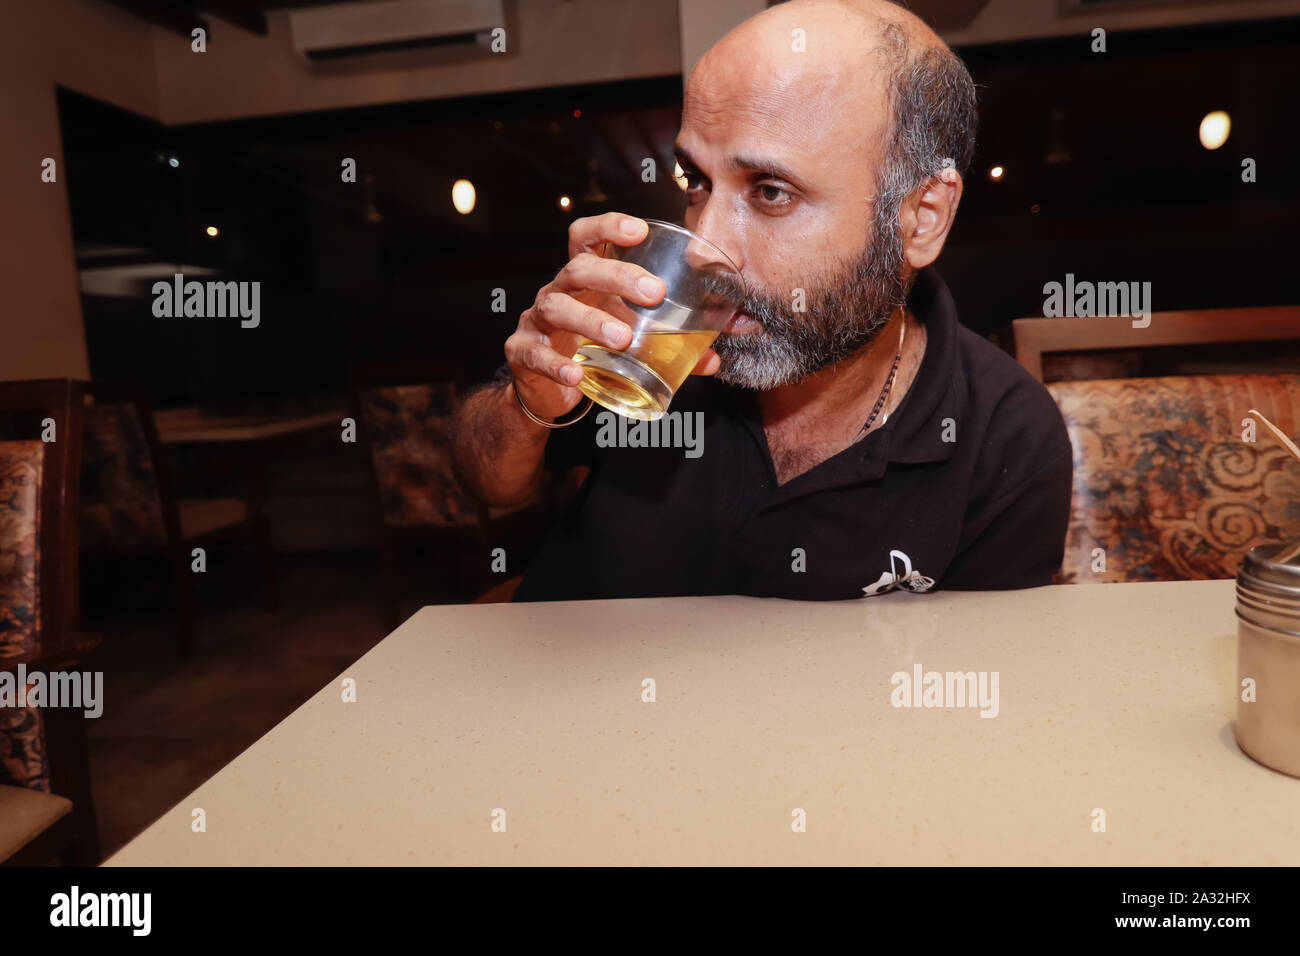 Ein Model posiert wie ein betrunkener Mann in seinem glaas von trinken Alkohol Stockfoto